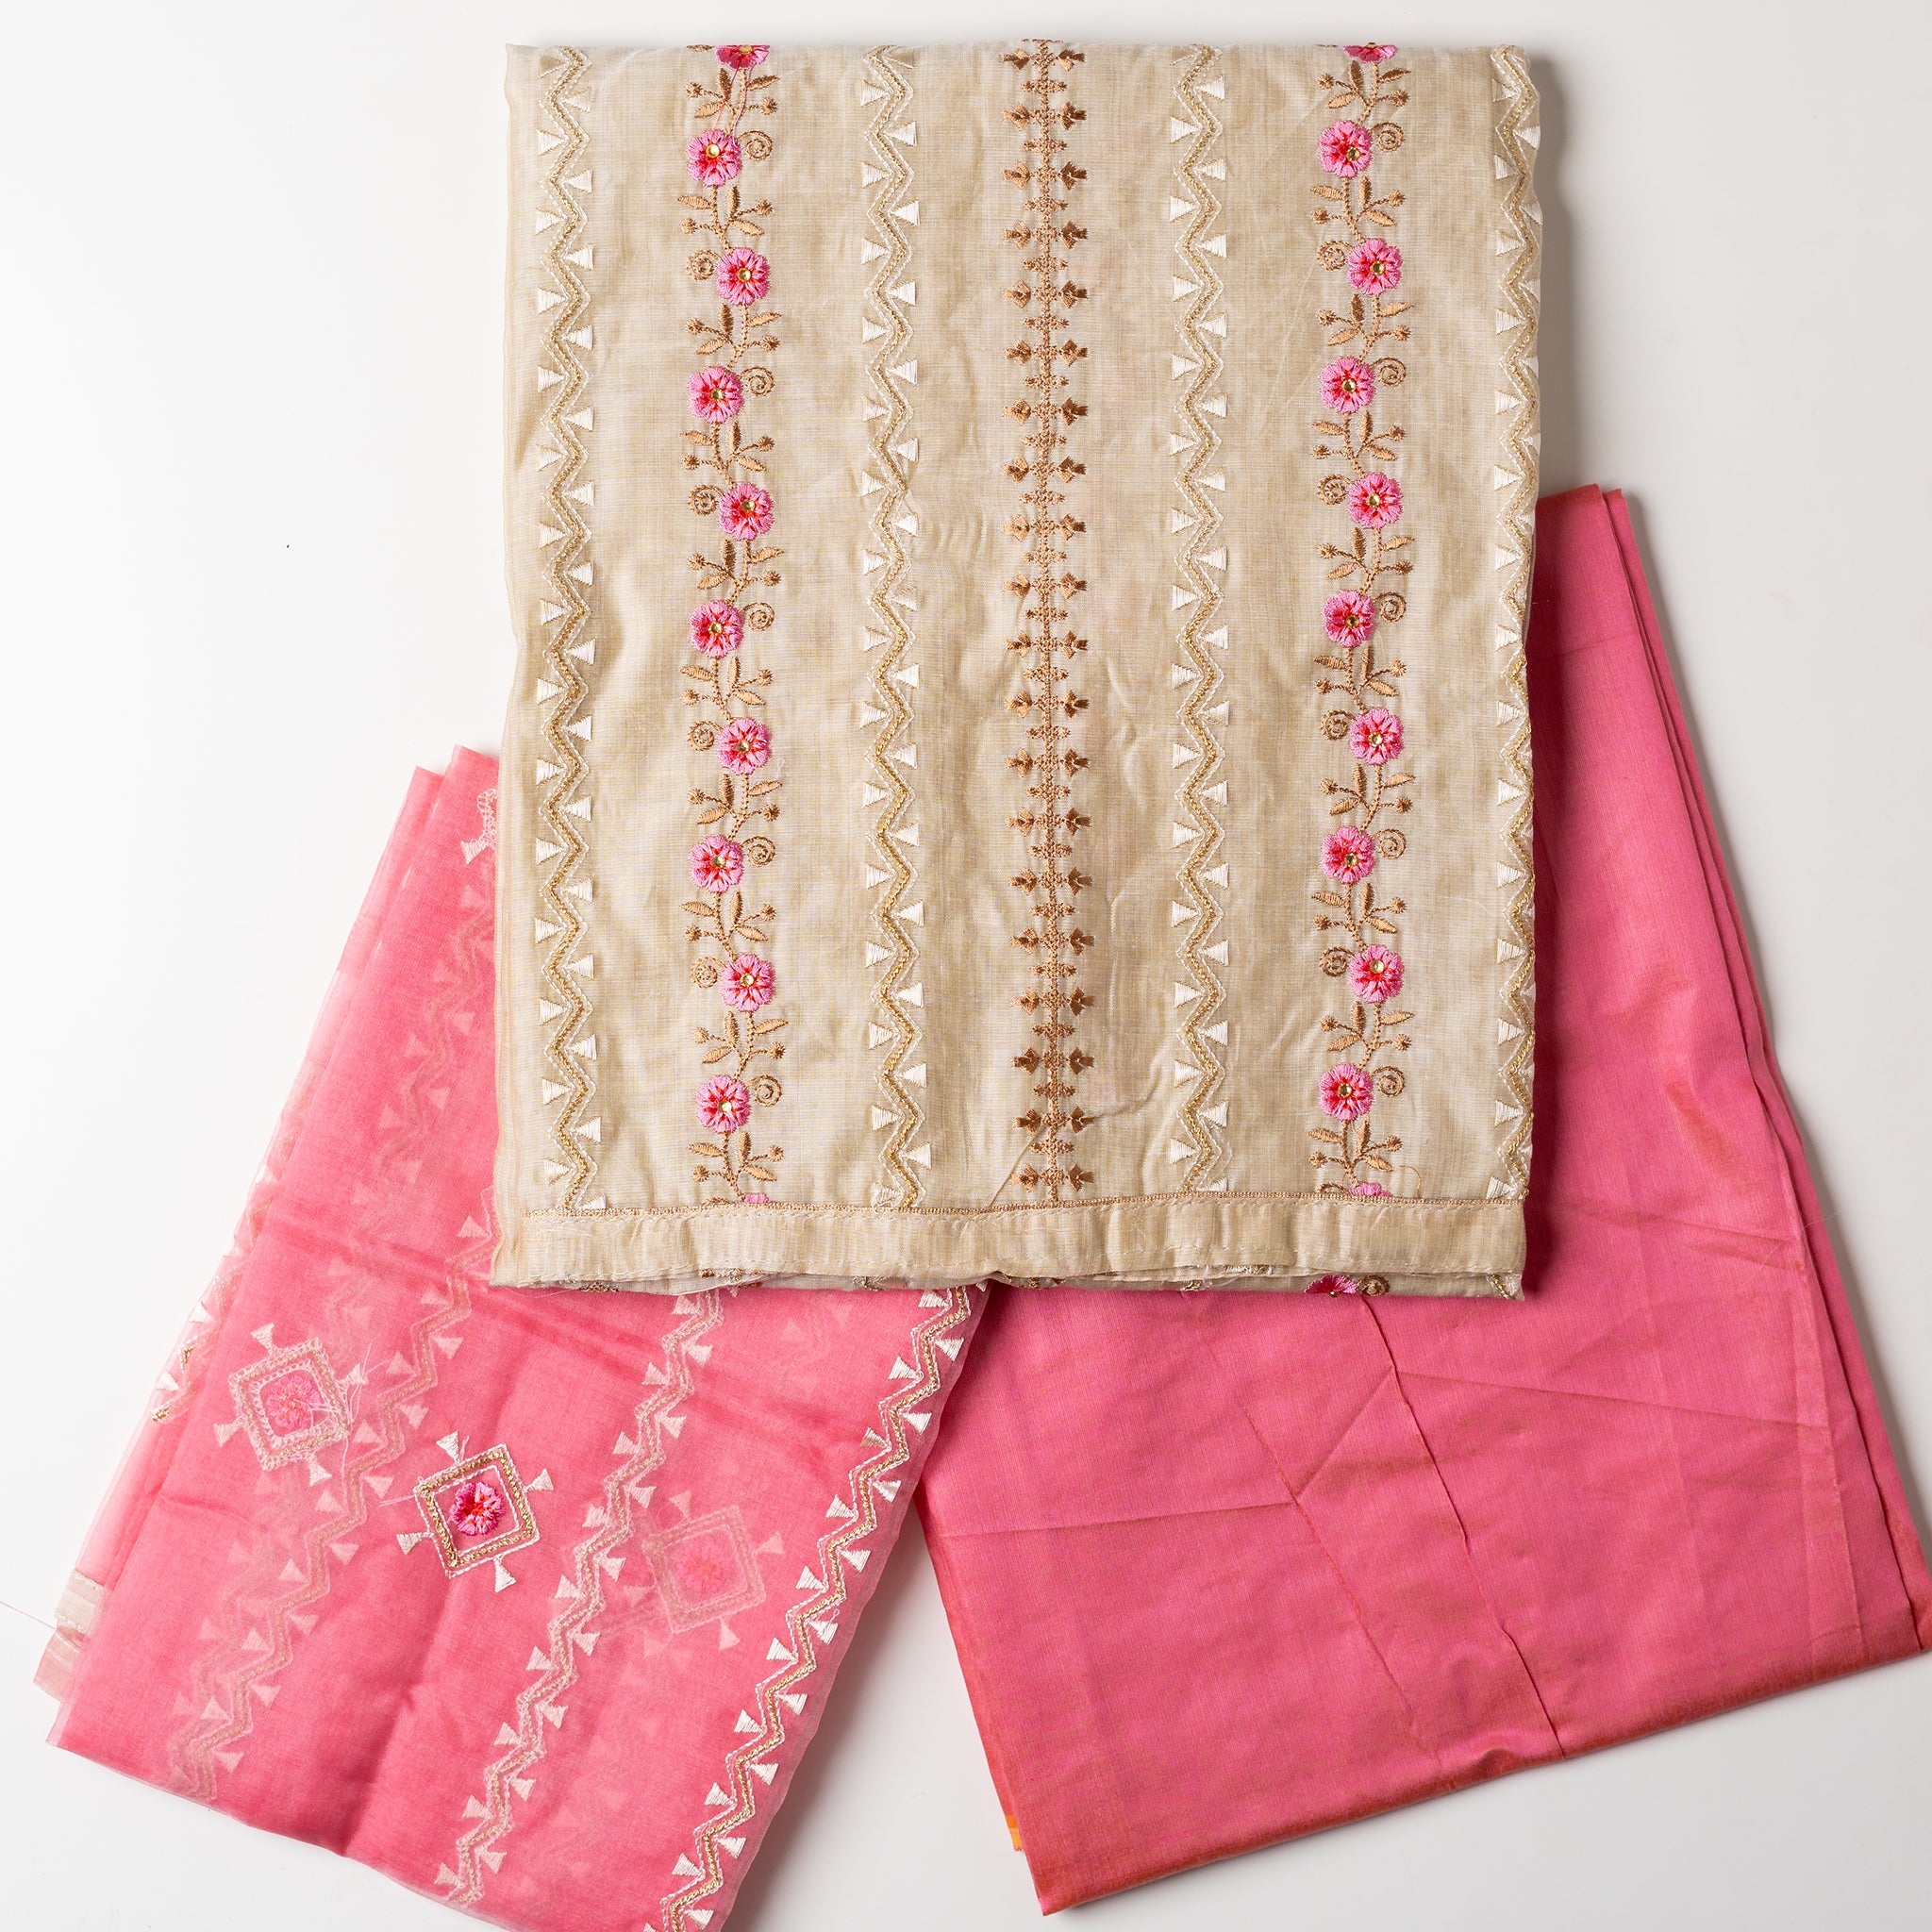 Buy Kalamkari Chanderi Silk Dress Material With Dupatta at Amazon.in